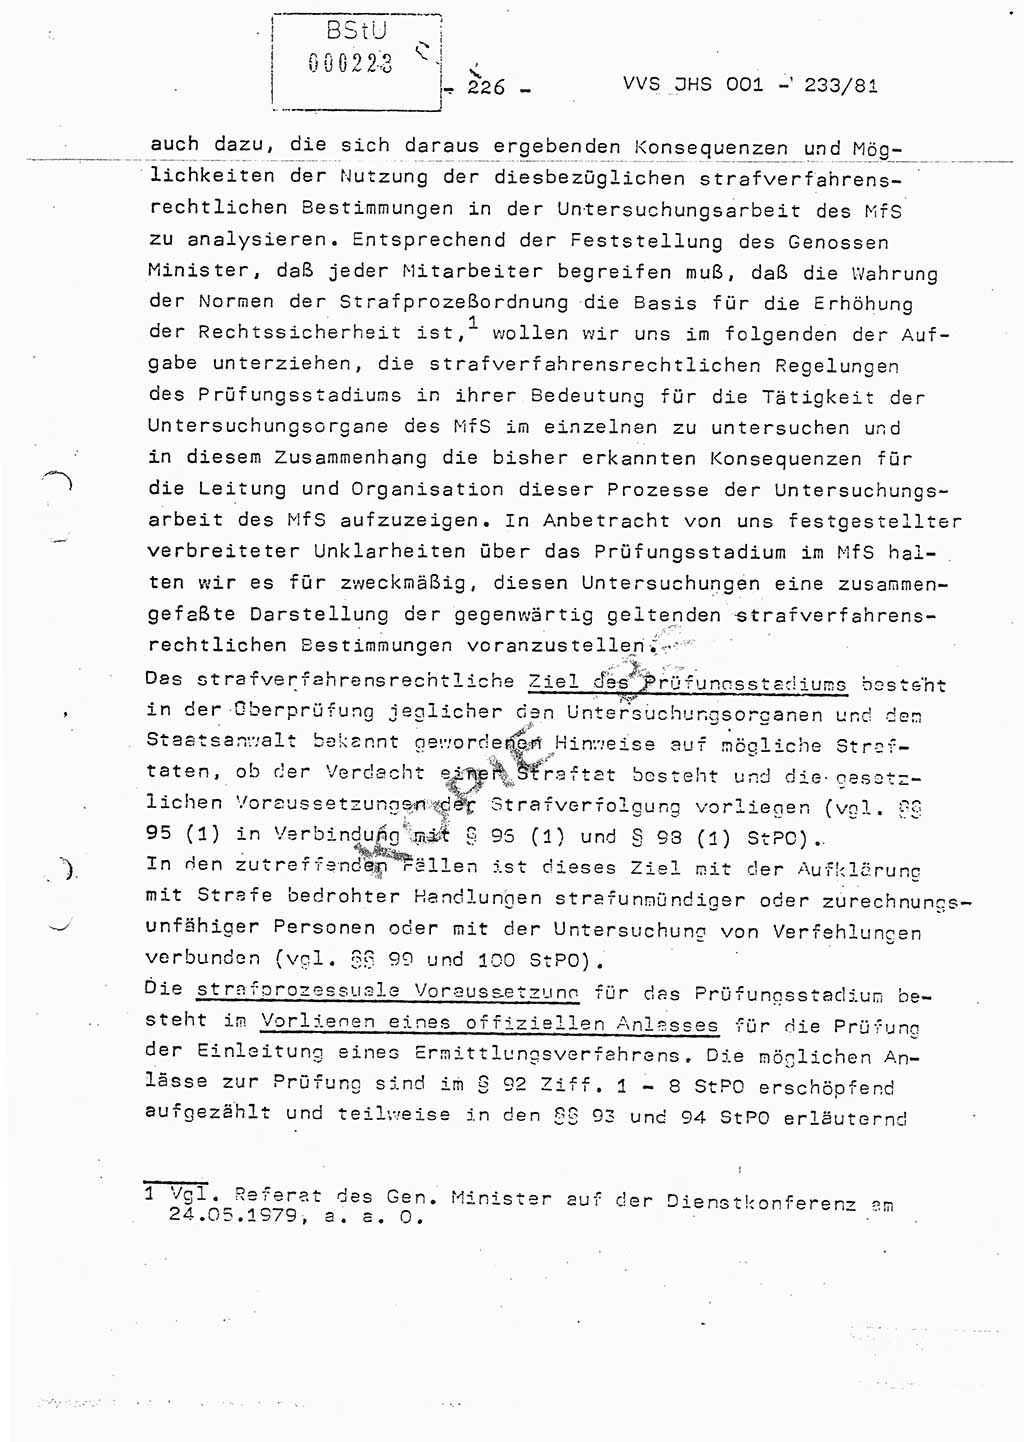 Dissertation Oberstleutnant Horst Zank (JHS), Oberstleutnant Dr. Karl-Heinz Knoblauch (JHS), Oberstleutnant Gustav-Adolf Kowalewski (HA Ⅸ), Oberstleutnant Wolfgang Plötner (HA Ⅸ), Ministerium für Staatssicherheit (MfS) [Deutsche Demokratische Republik (DDR)], Juristische Hochschule (JHS), Vertrauliche Verschlußsache (VVS) o001-233/81, Potsdam 1981, Blatt 226 (Diss. MfS DDR JHS VVS o001-233/81 1981, Bl. 226)